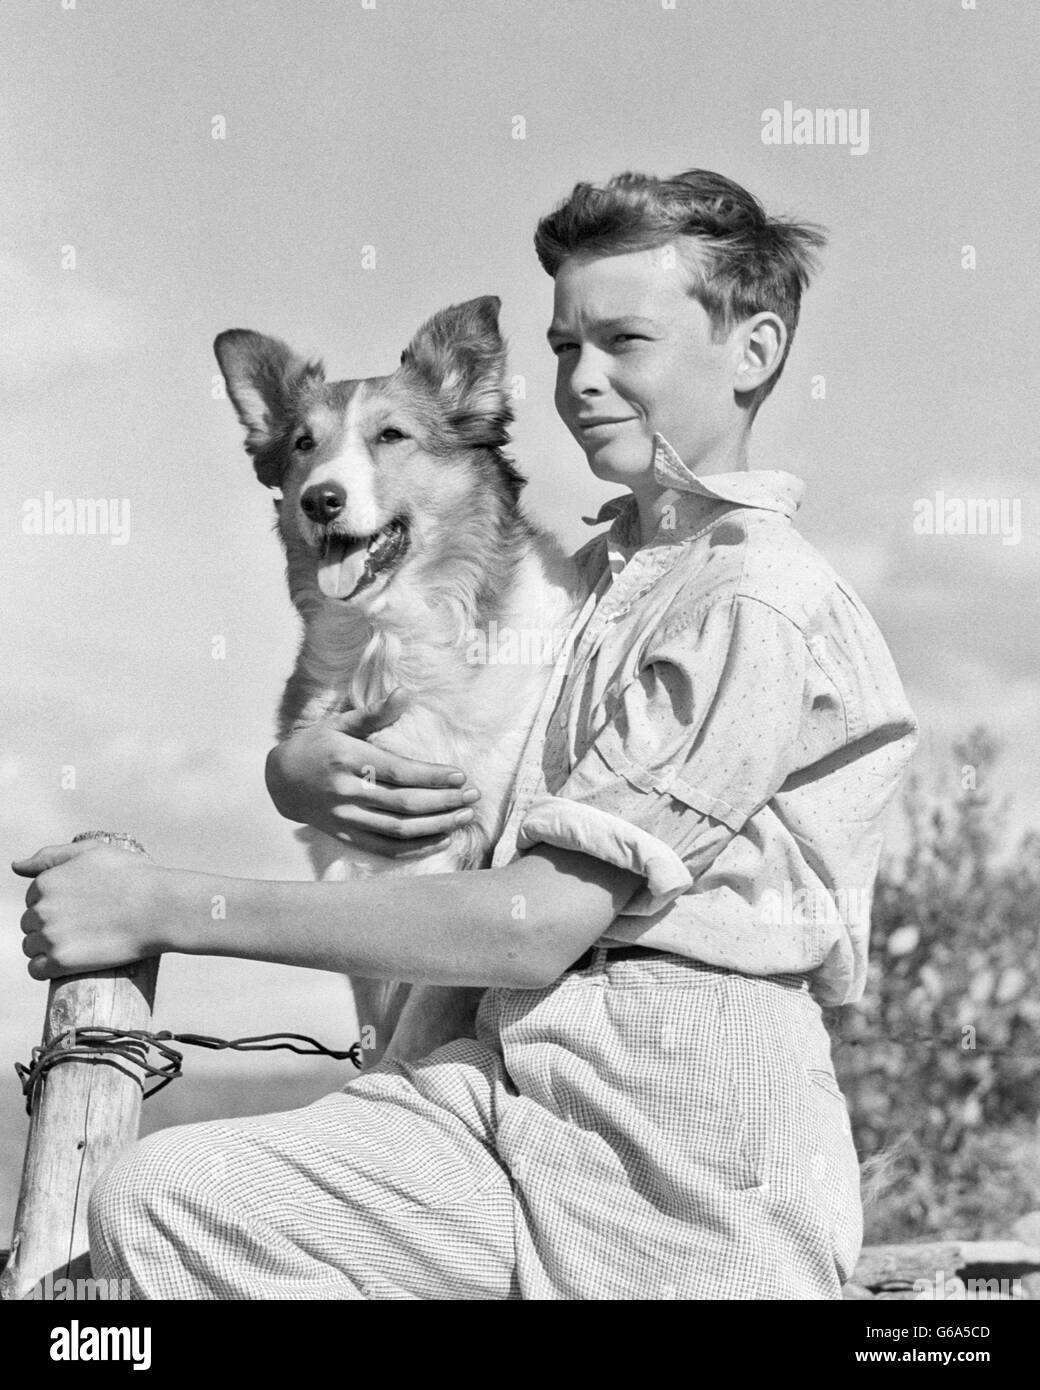 Années 1930 Années 1940 PORTRAIT garçon assis tenant sa clôture COLLEY CHIEN ANIMAL Banque D'Images